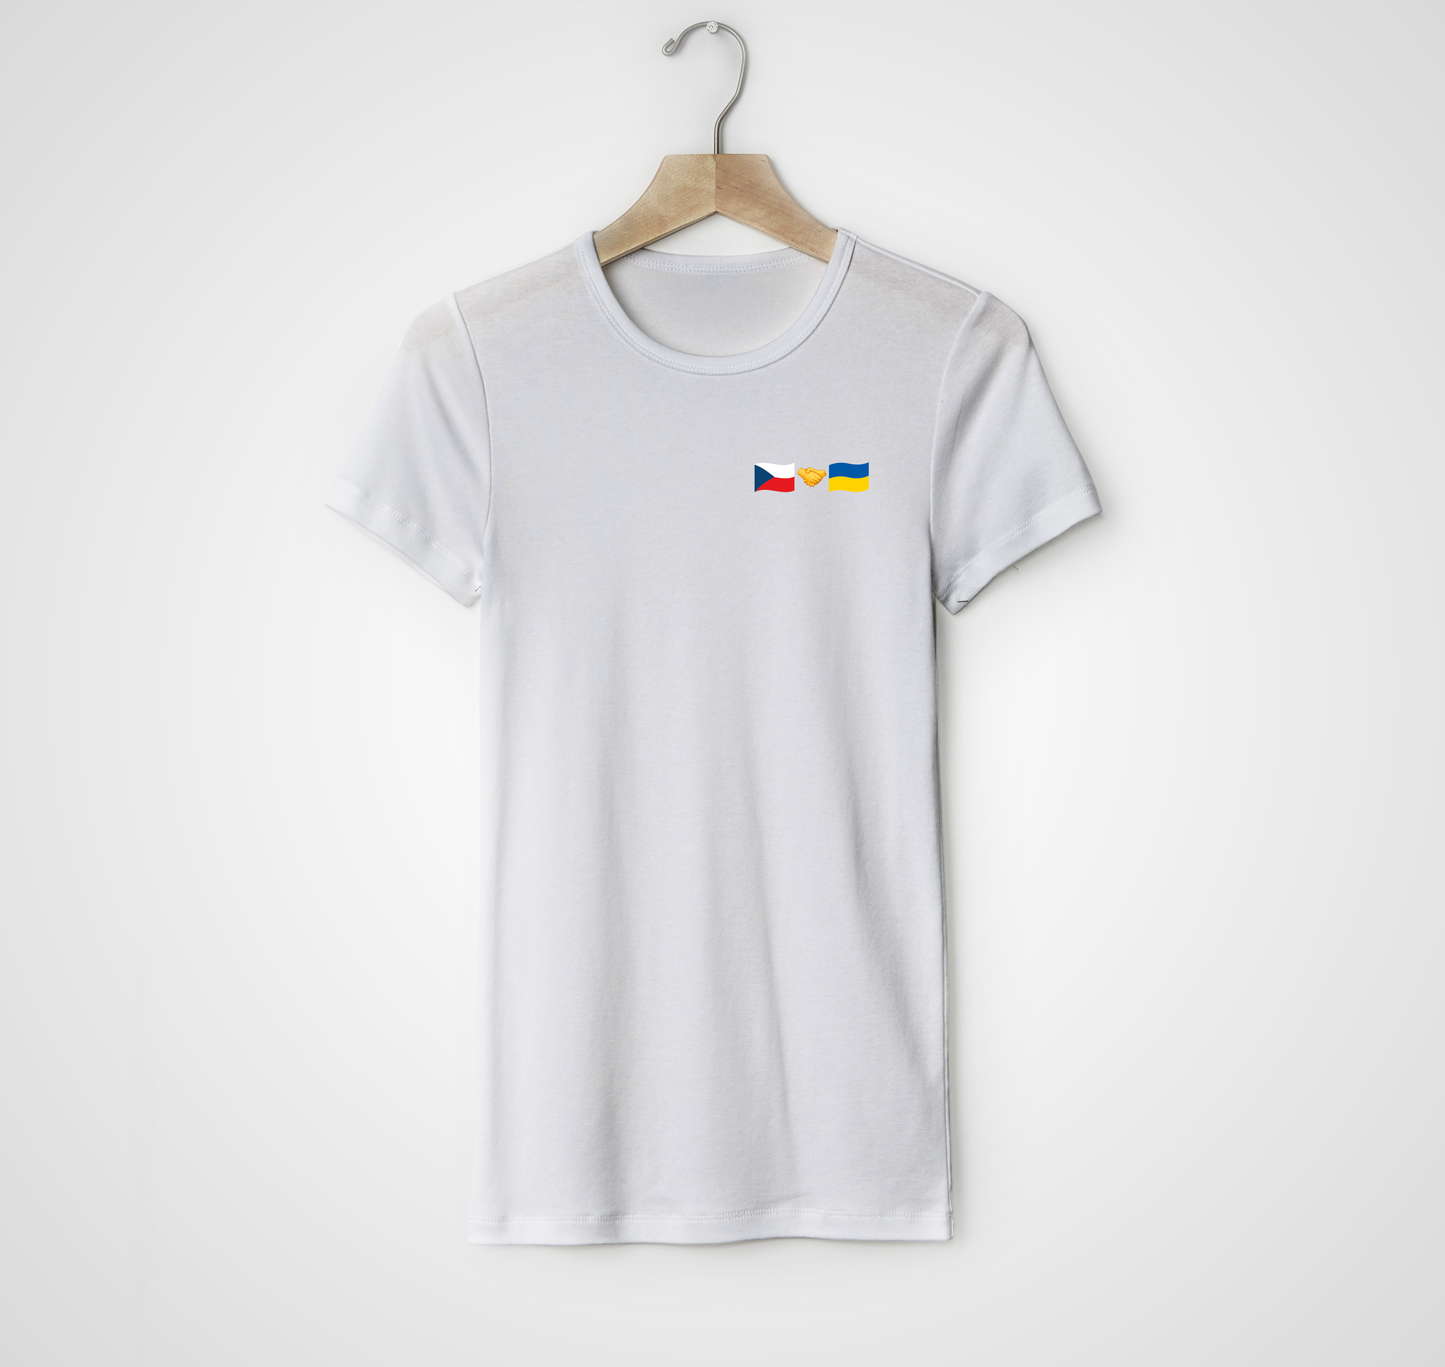 Т-shirt Czech + Ukraine (small logo)